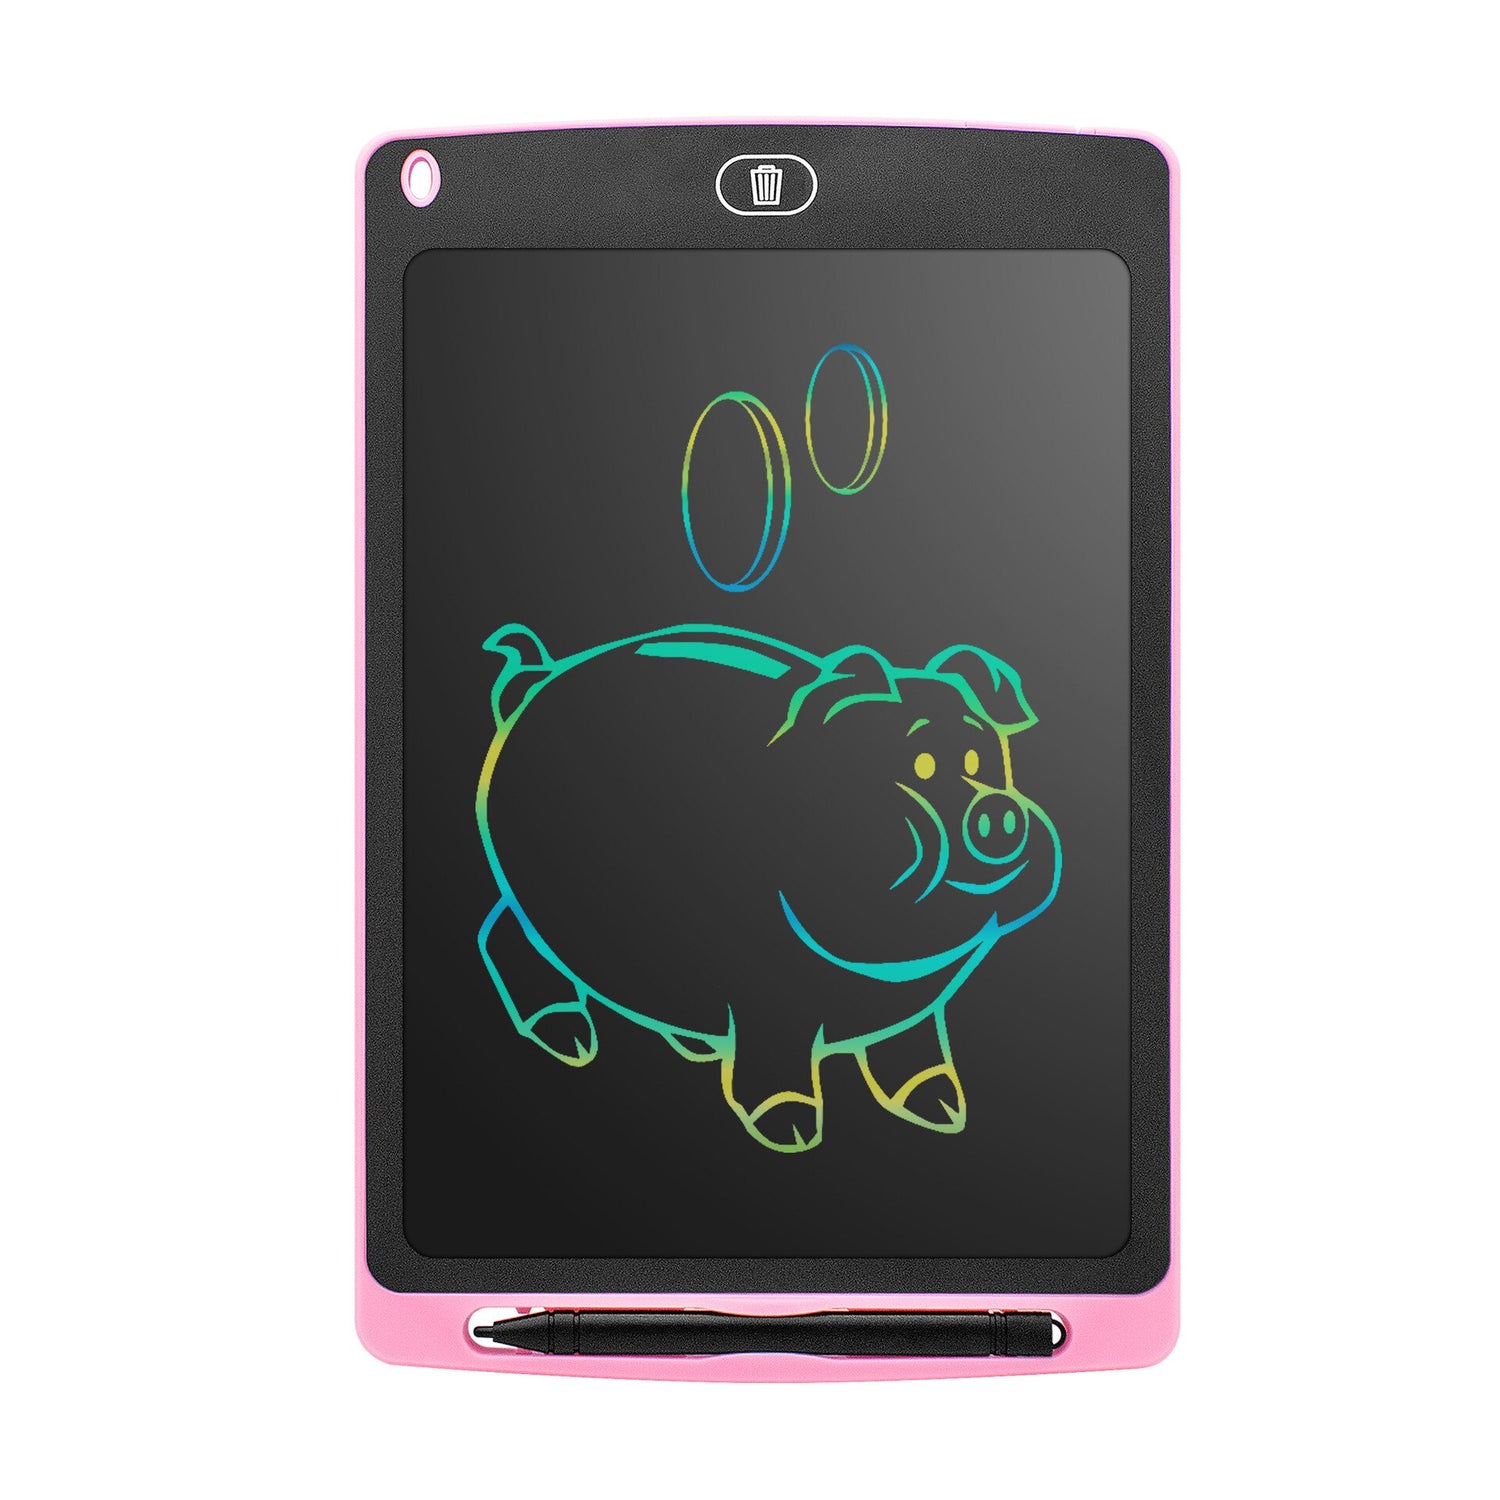 Tablette intelligente anti-casse enfant + stylet - X10 Maroc - Livraison gratuite - Rose